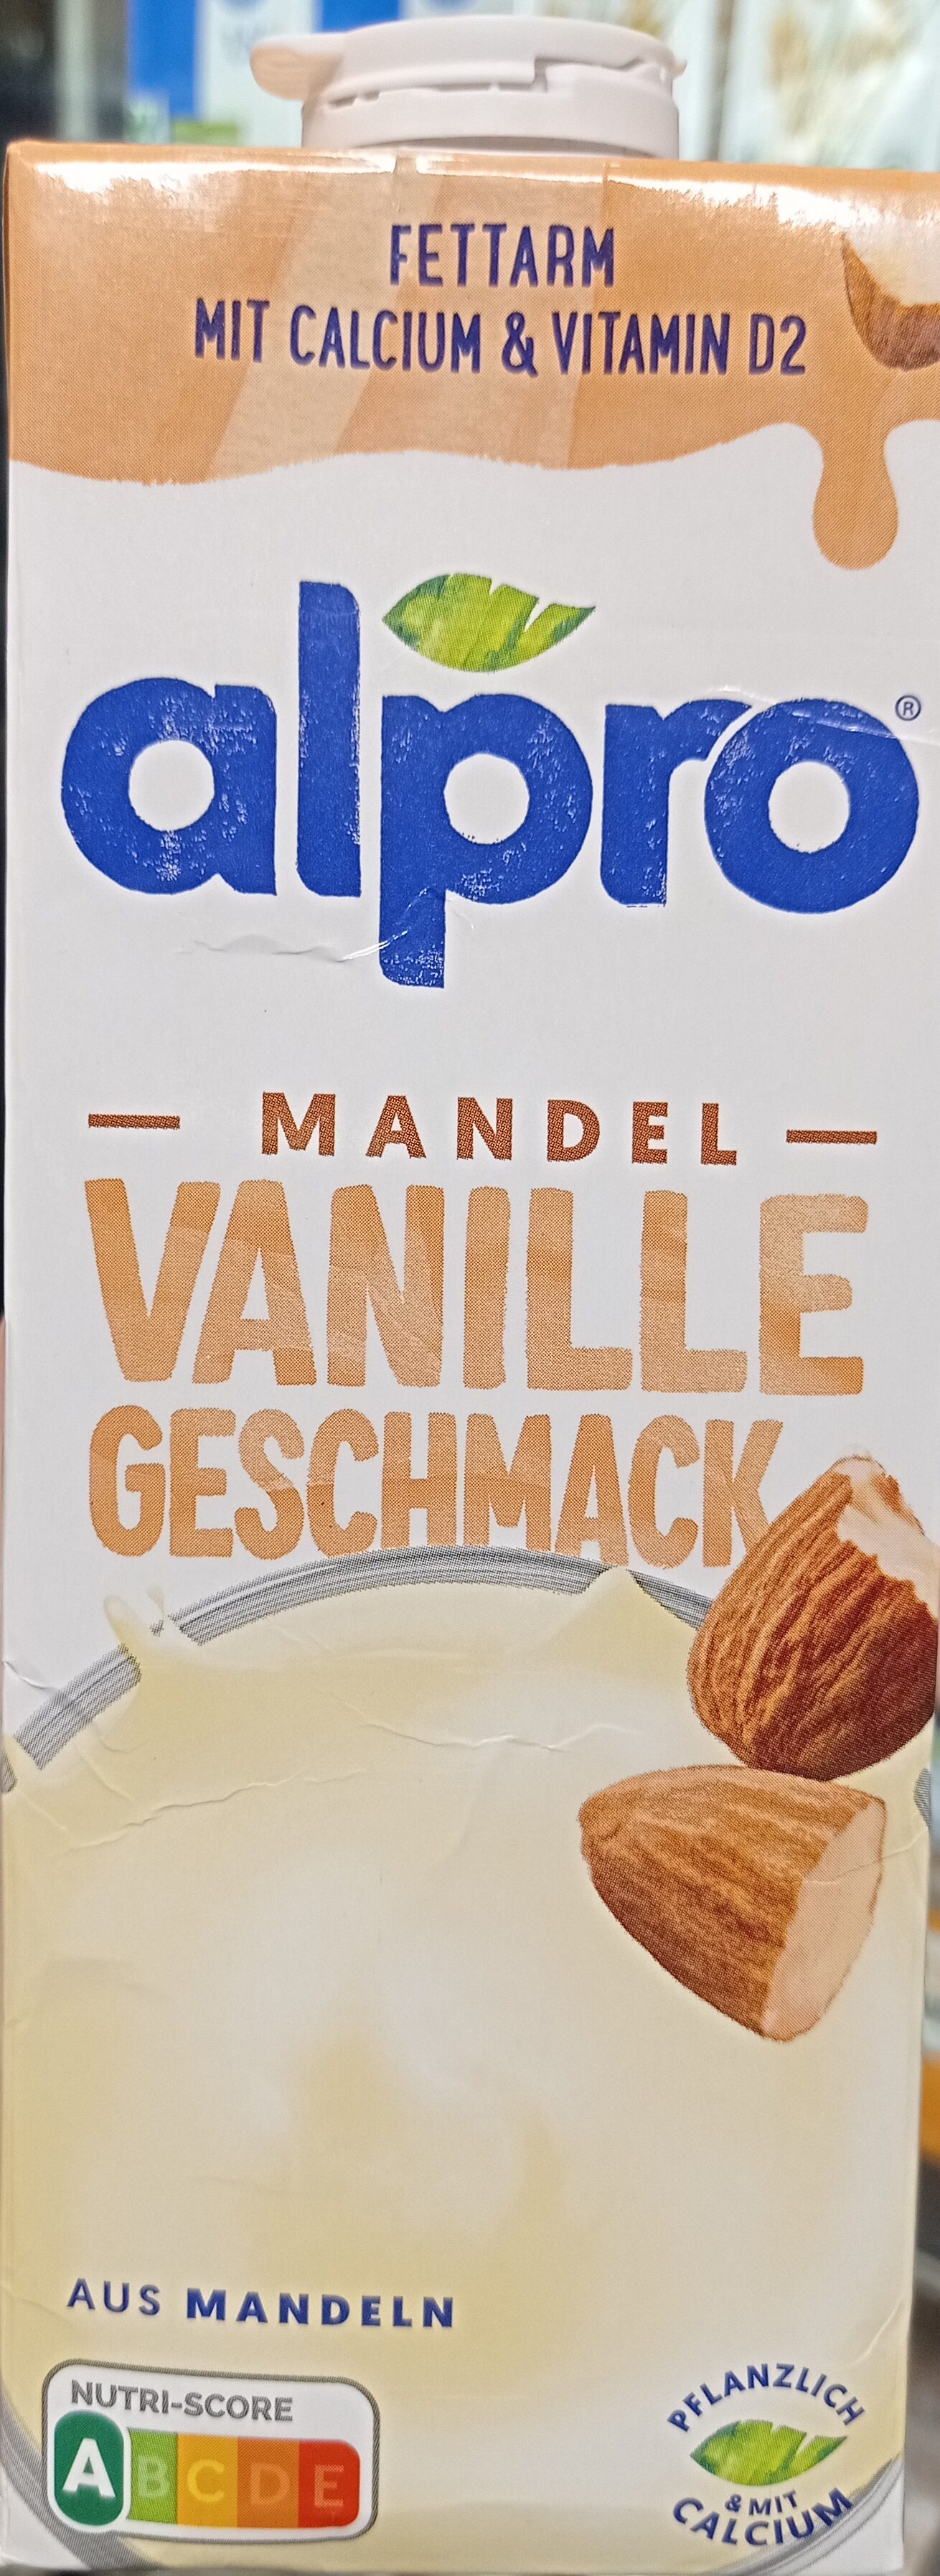 Mandel Vanille Geschmack - Product - de